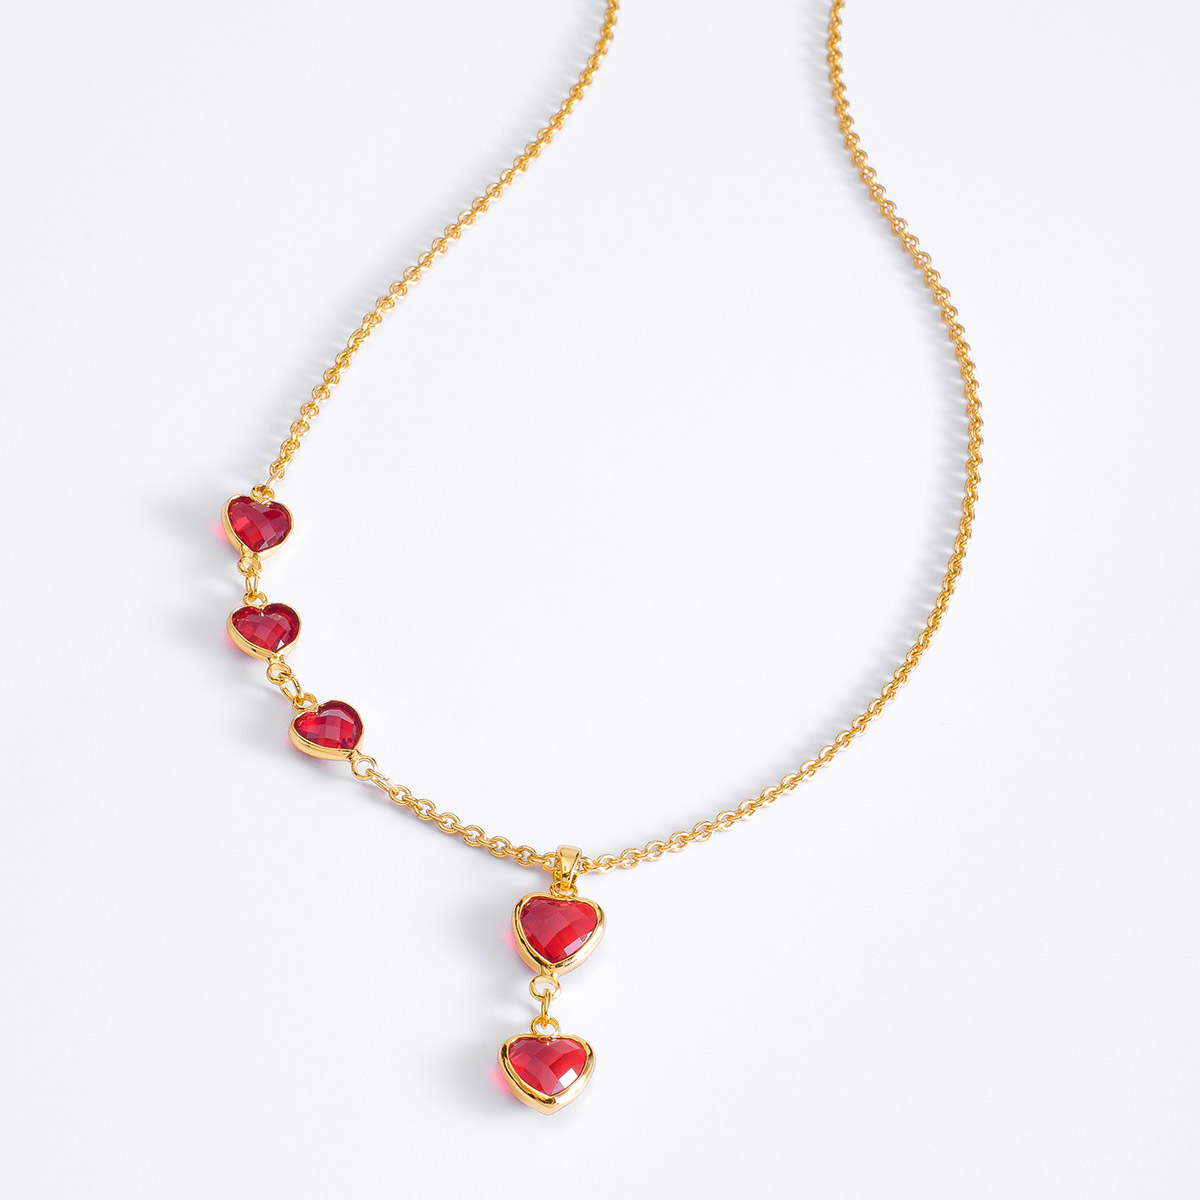 El amor y la elegancia se acompañan con este hermoso collar adornado con cinco dijes de  en forma de corazón  en tono rojo.
-Collar con Dije
-Oro 18k
-Piedras en tono rojo